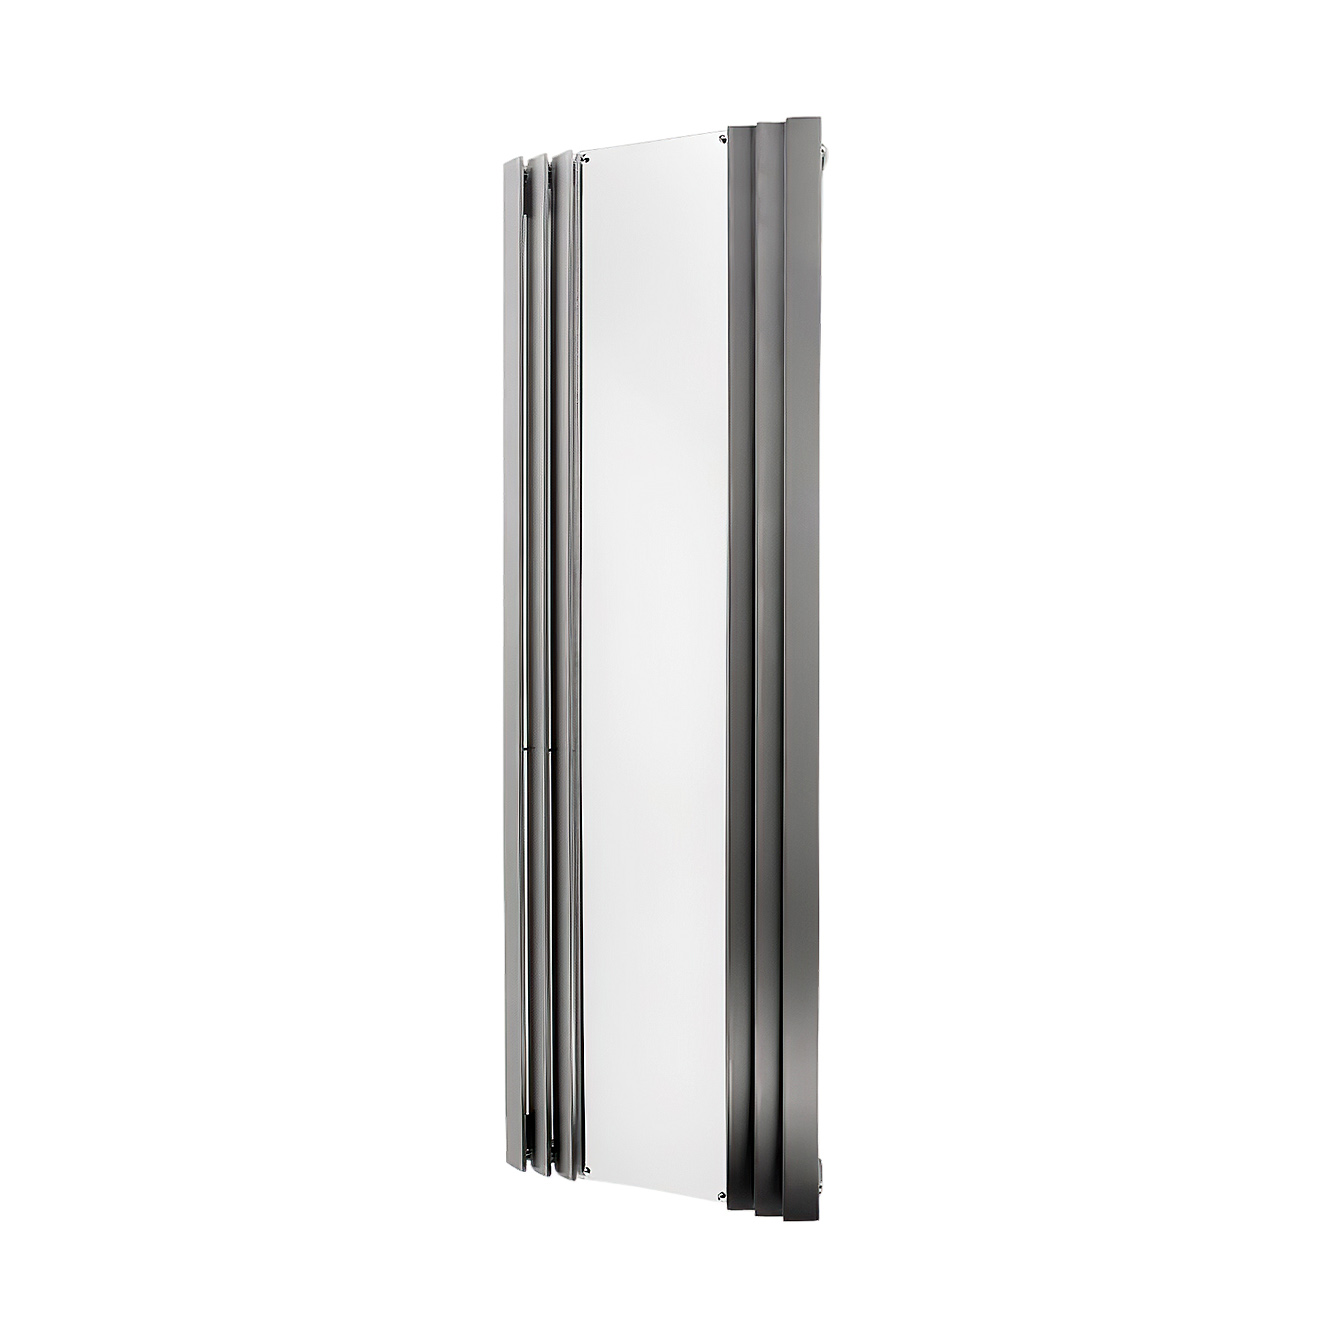 Panacea Mirror - Schicke AEON Spiegelheizung (1800 x 600mm) mit Handtuchhalter | Radiamo